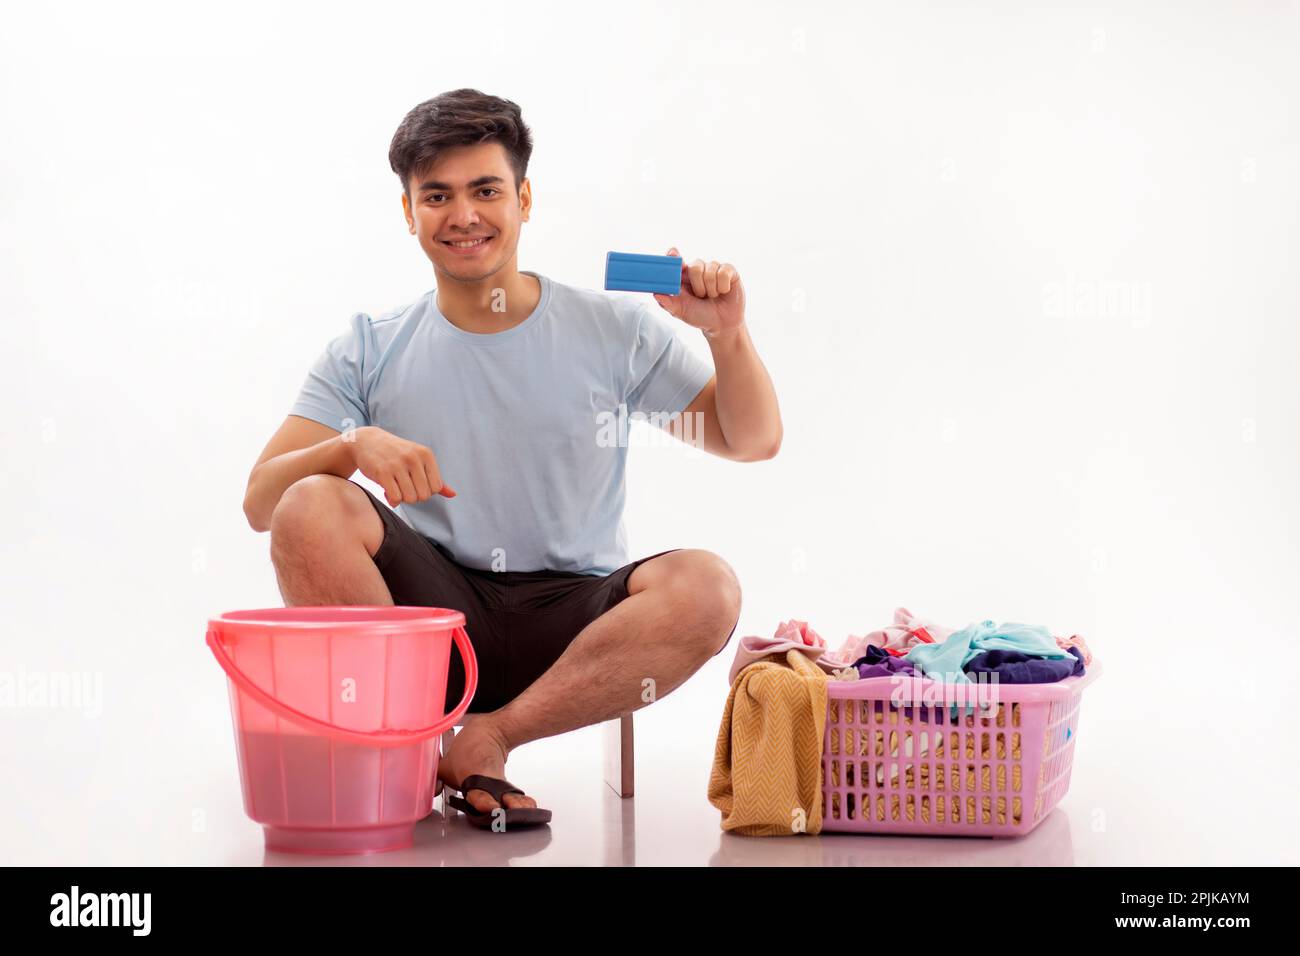 Ein glücklicher junger Mann, der Wäscheseifenriegel zeigt, der in der Hand hält Stockfoto